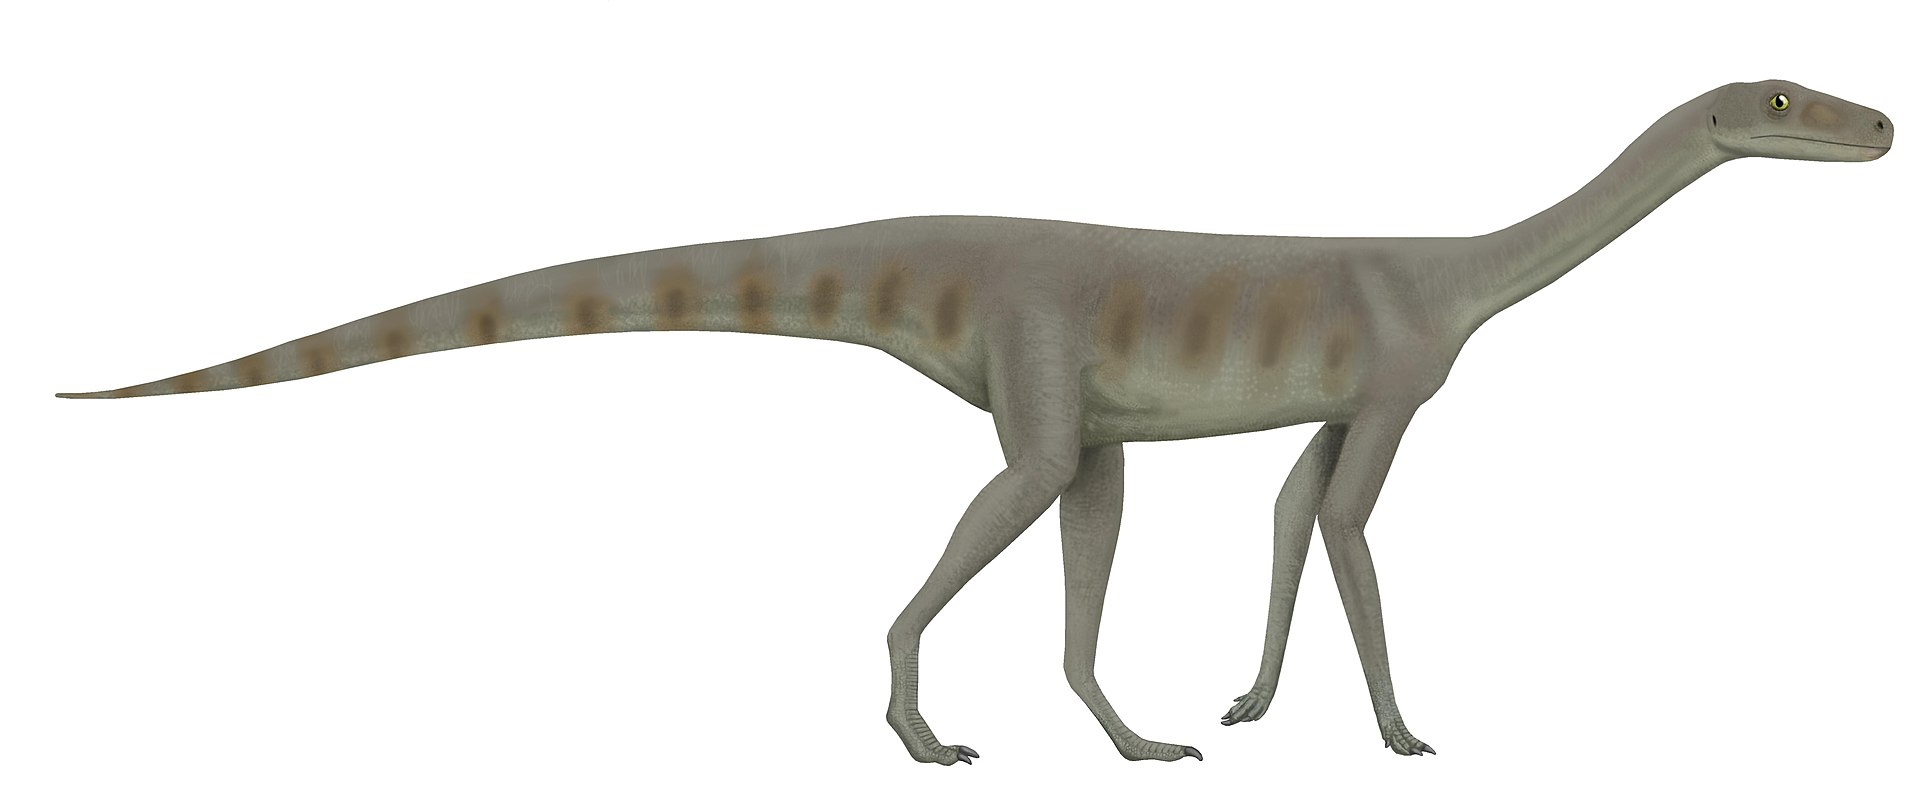 Asilisaurus kongwe byl vzhledově typickým zástupcem čeledi silesauridů, dinosauriformů blízce příbuzných „pravým“ dinosaurům. Jednalo se o štíhlého, pohyblivého archosaura, který žil v období středního triasu (asi před 245 miliony let) na území dnešn